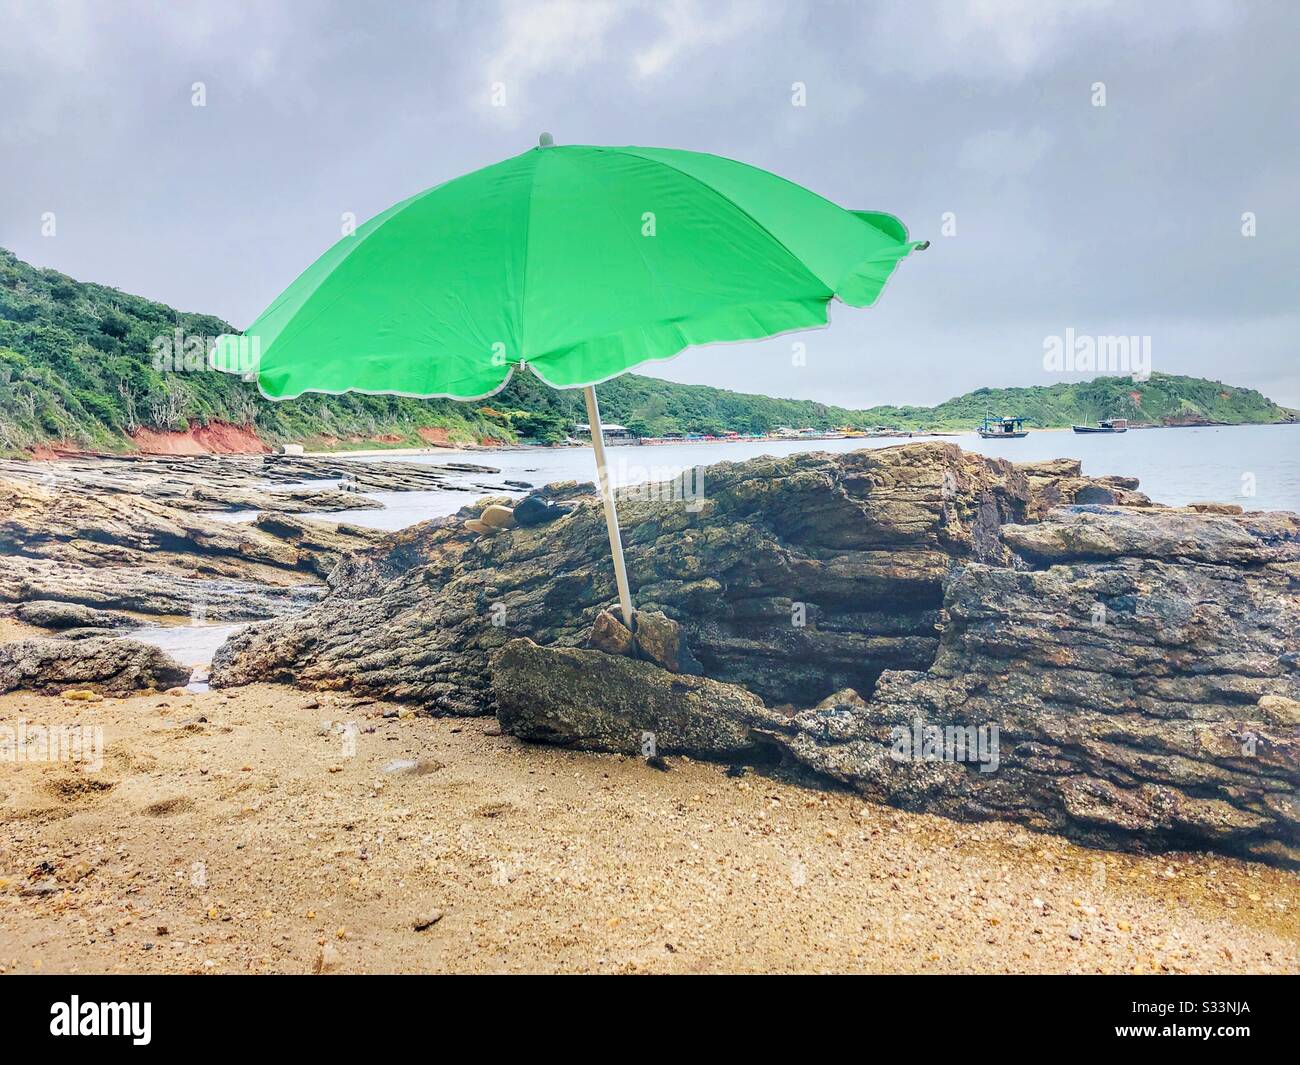 A green sun umbrella on the beach. Stock Photo